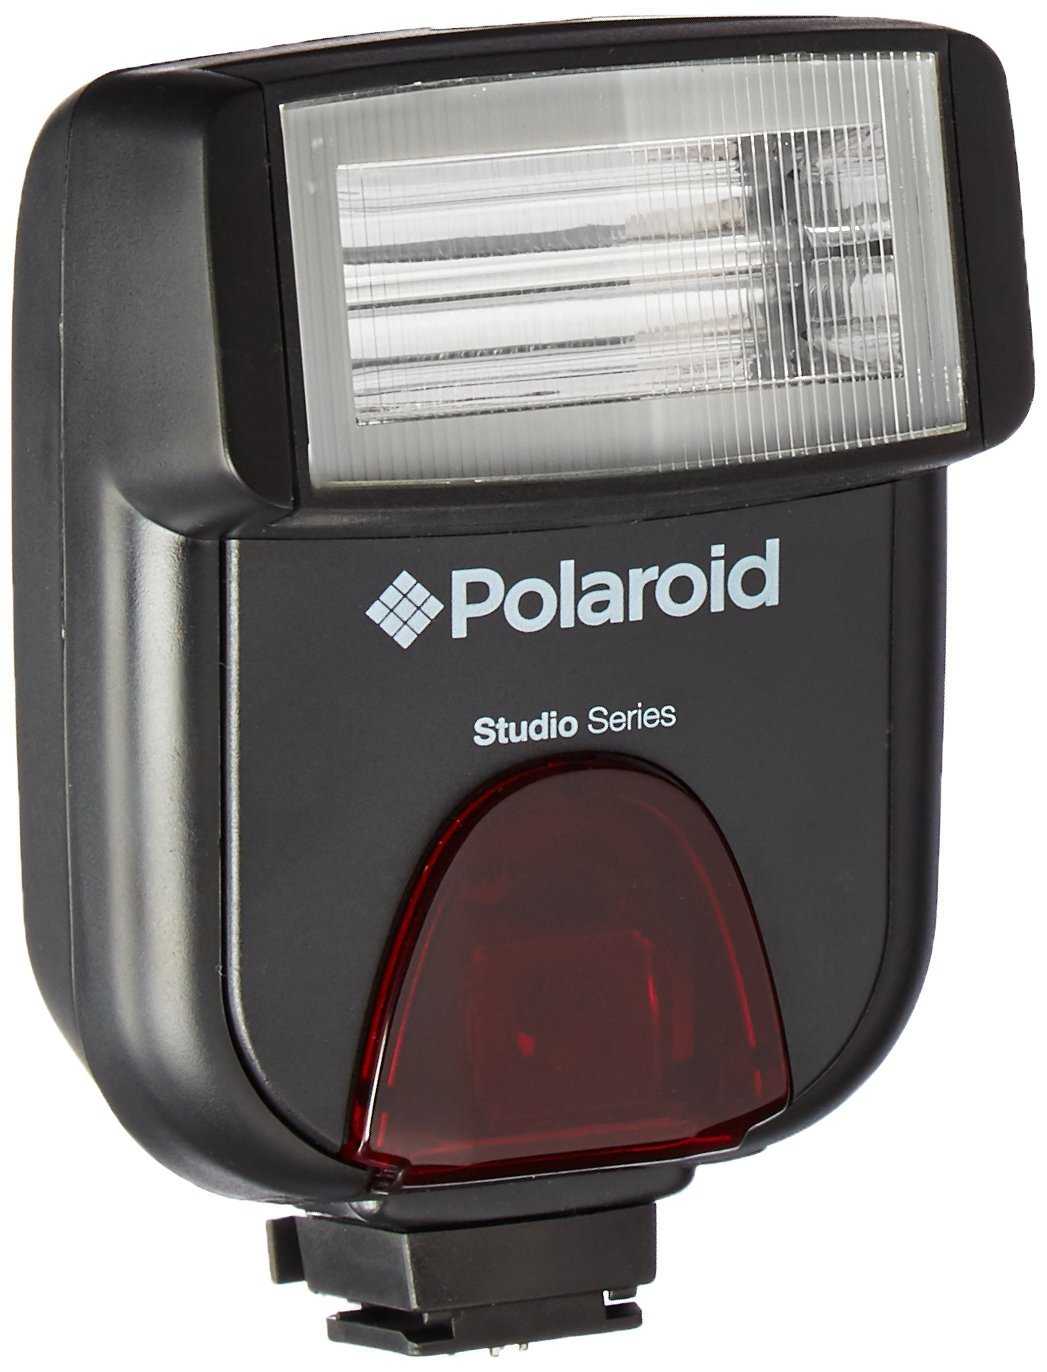 Polaroid pl126-pz for olympus/panasonic купить по акционной цене , отзывы и обзоры.